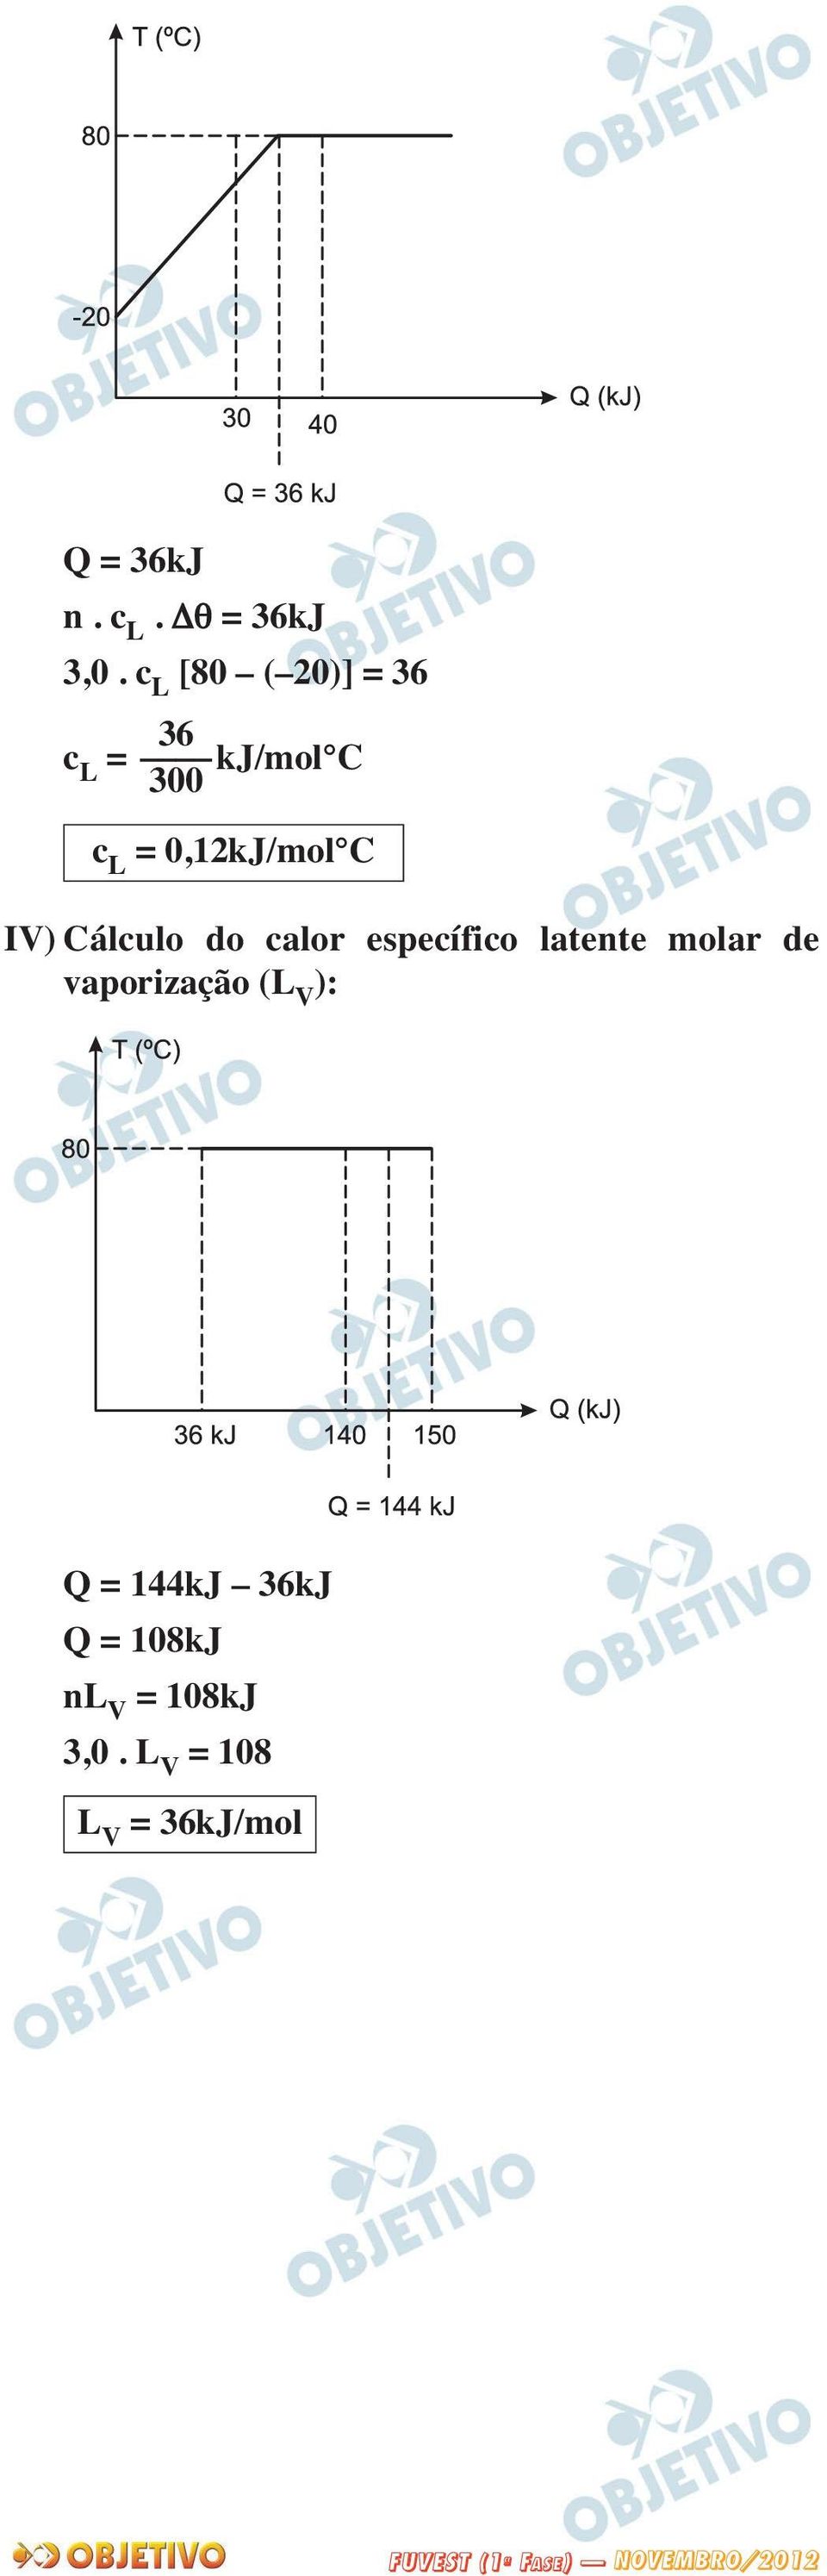 0,12kJ/mol C IV) Cálculo do calor específico latente